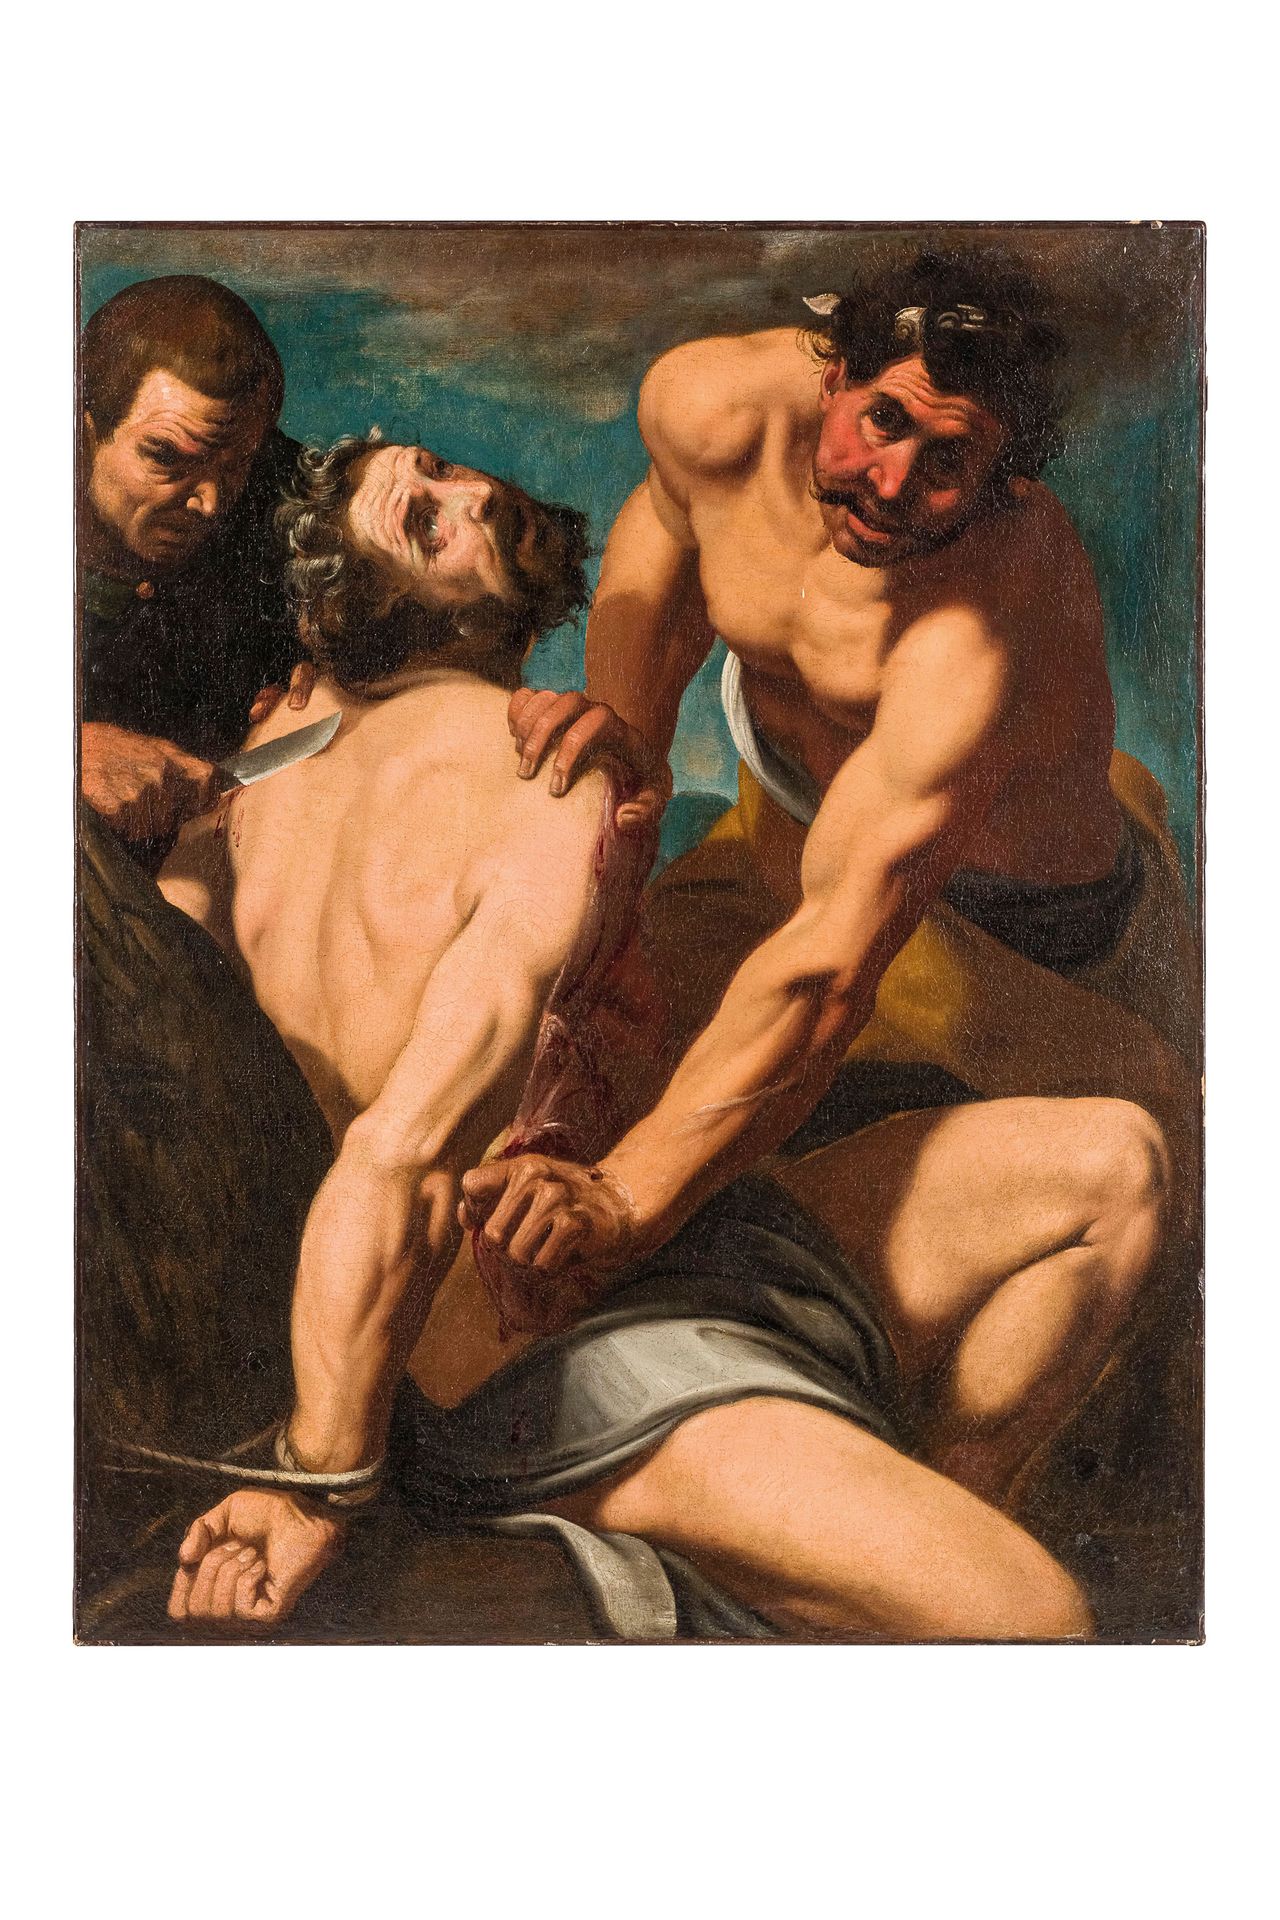 PITTORE DEL XVII SECOLO Martyre de Saint Barthélémy
Huile sur toile, 99X79 cm